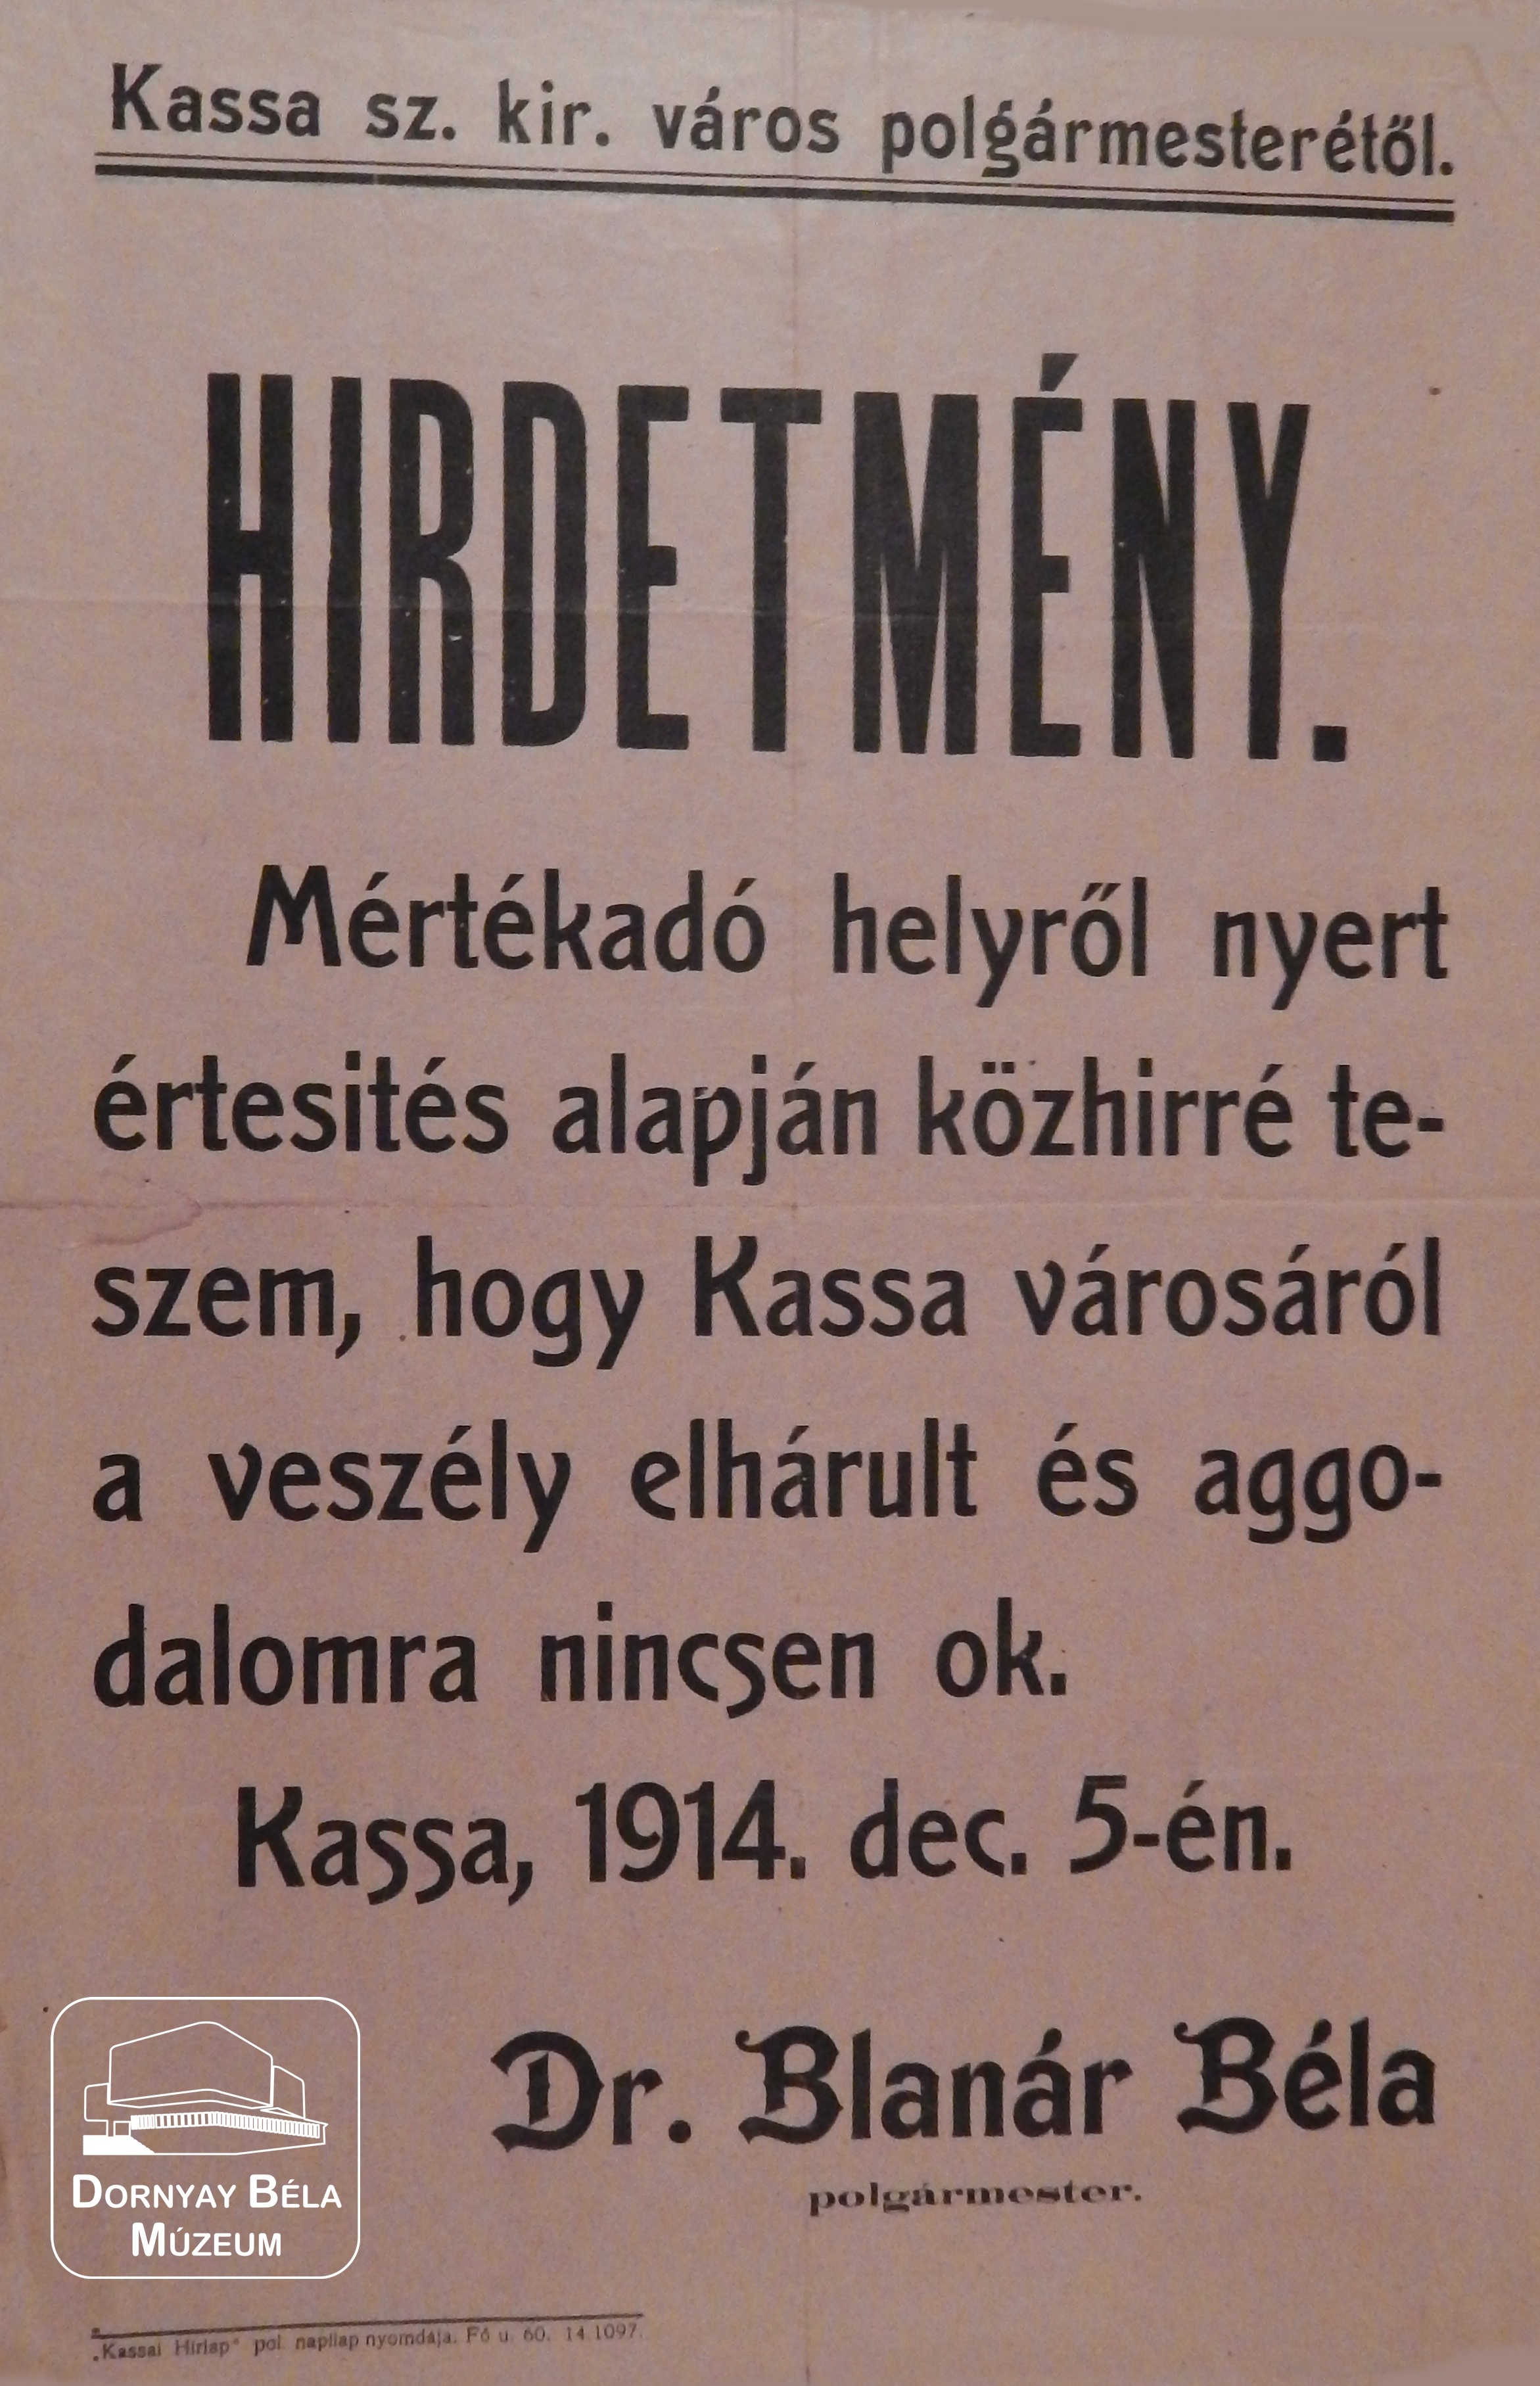 Kassai hirdetmény (Dornyay Béla Múzeum, Salgótarján CC BY-NC-SA)